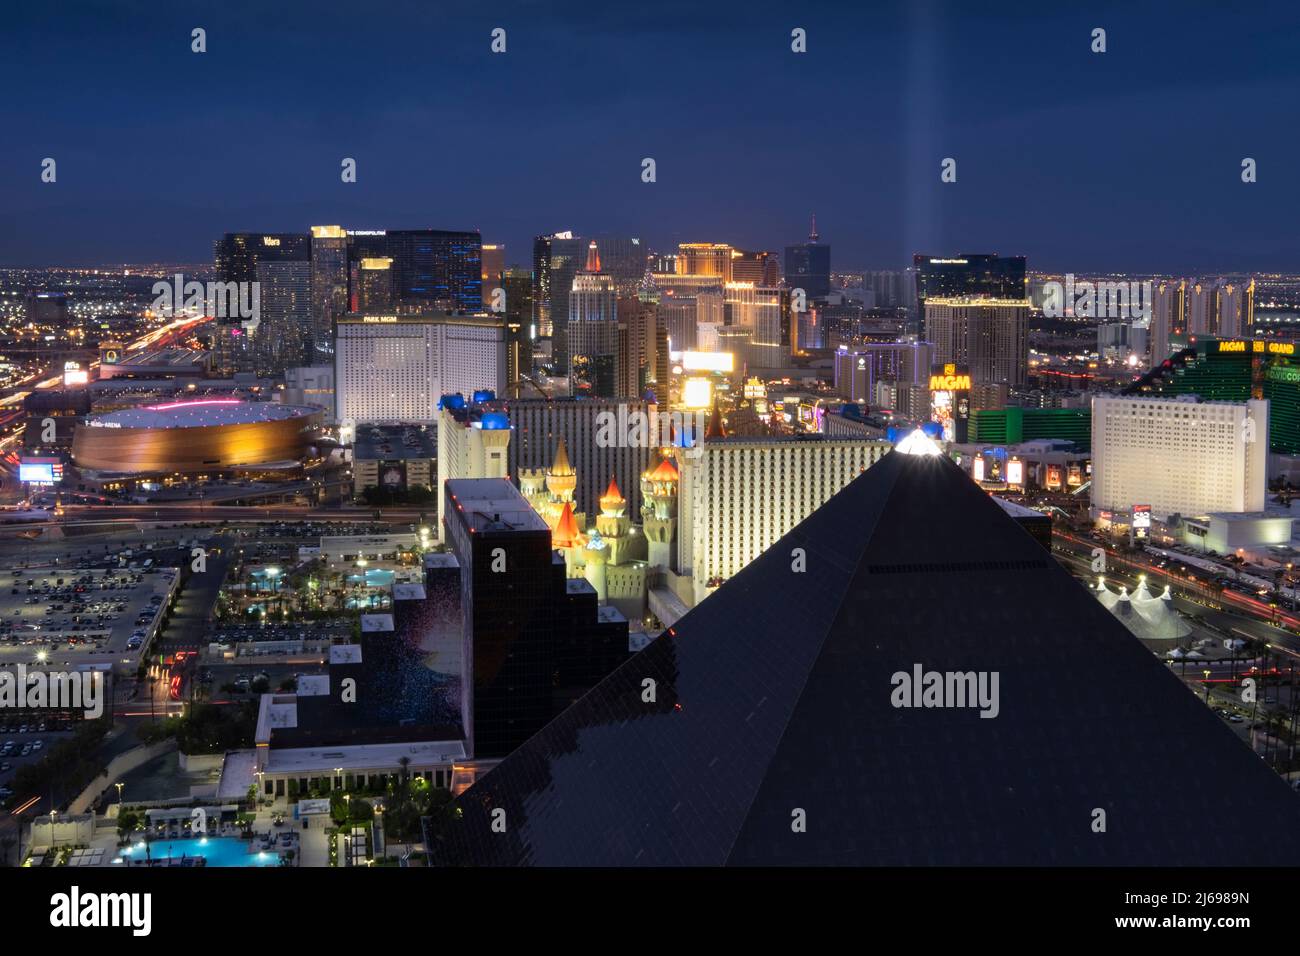 Erhöhter Blick auf das Luxor Hotel und Casino und den Las Vegas Strip bei Nacht, Las Vegas, Nevada, Vereinigte Staaten von Amerika Stockfoto